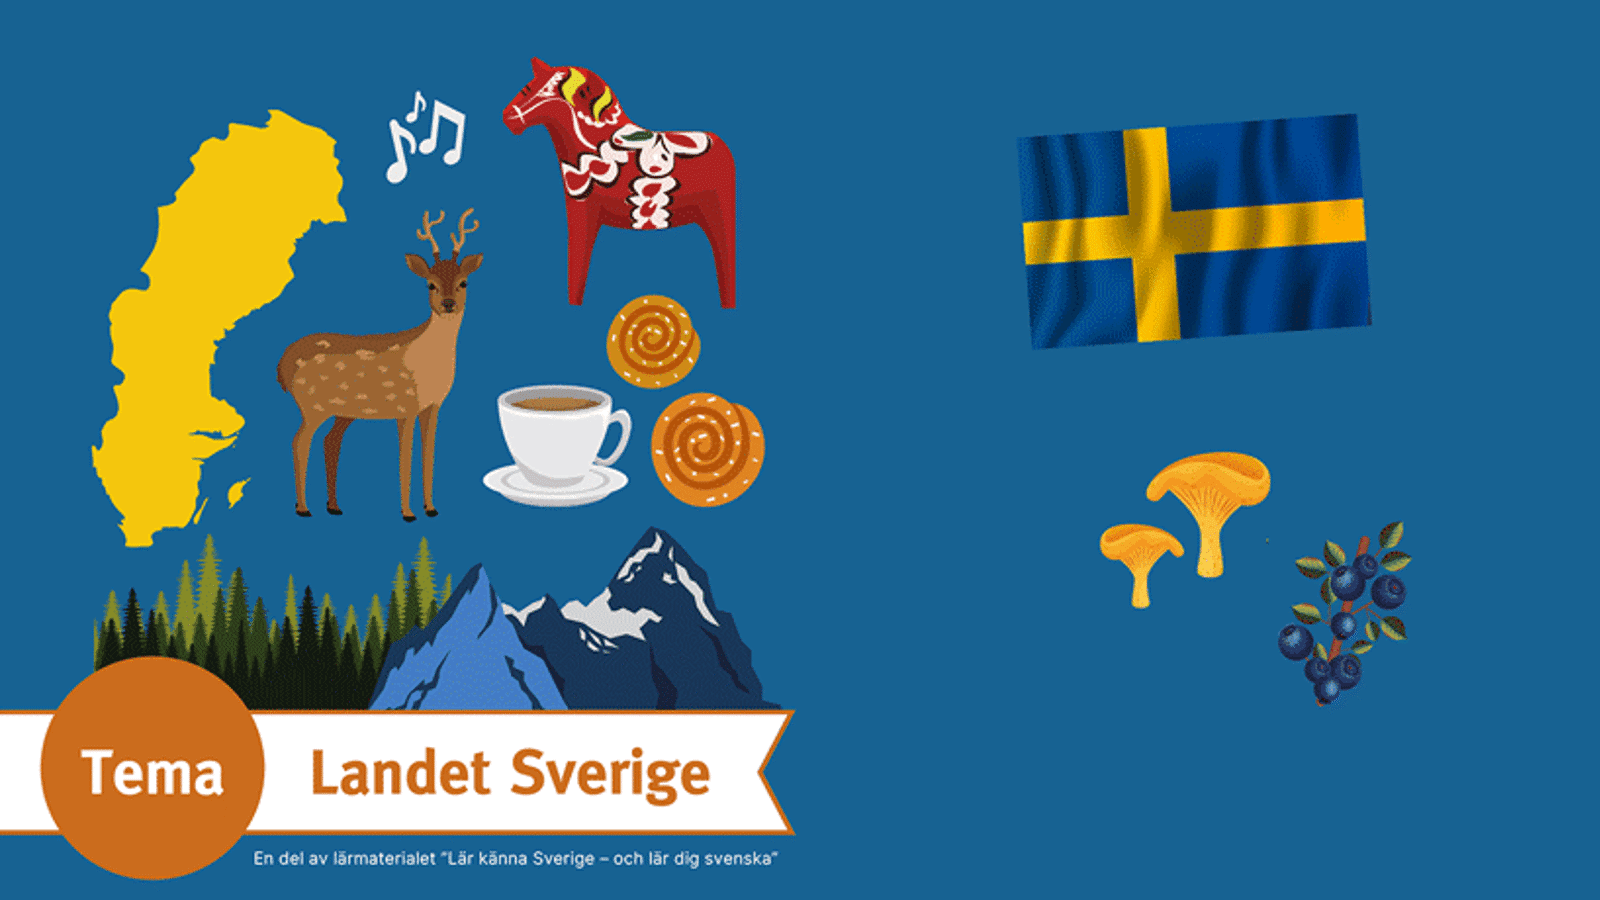 En blå bakgrund med olika saker som kännetecknar Sverige. På den blåa bilden är det bland annat den svenska flaggan, en dalahäst, kantareller, blåbär, och fikabröd.